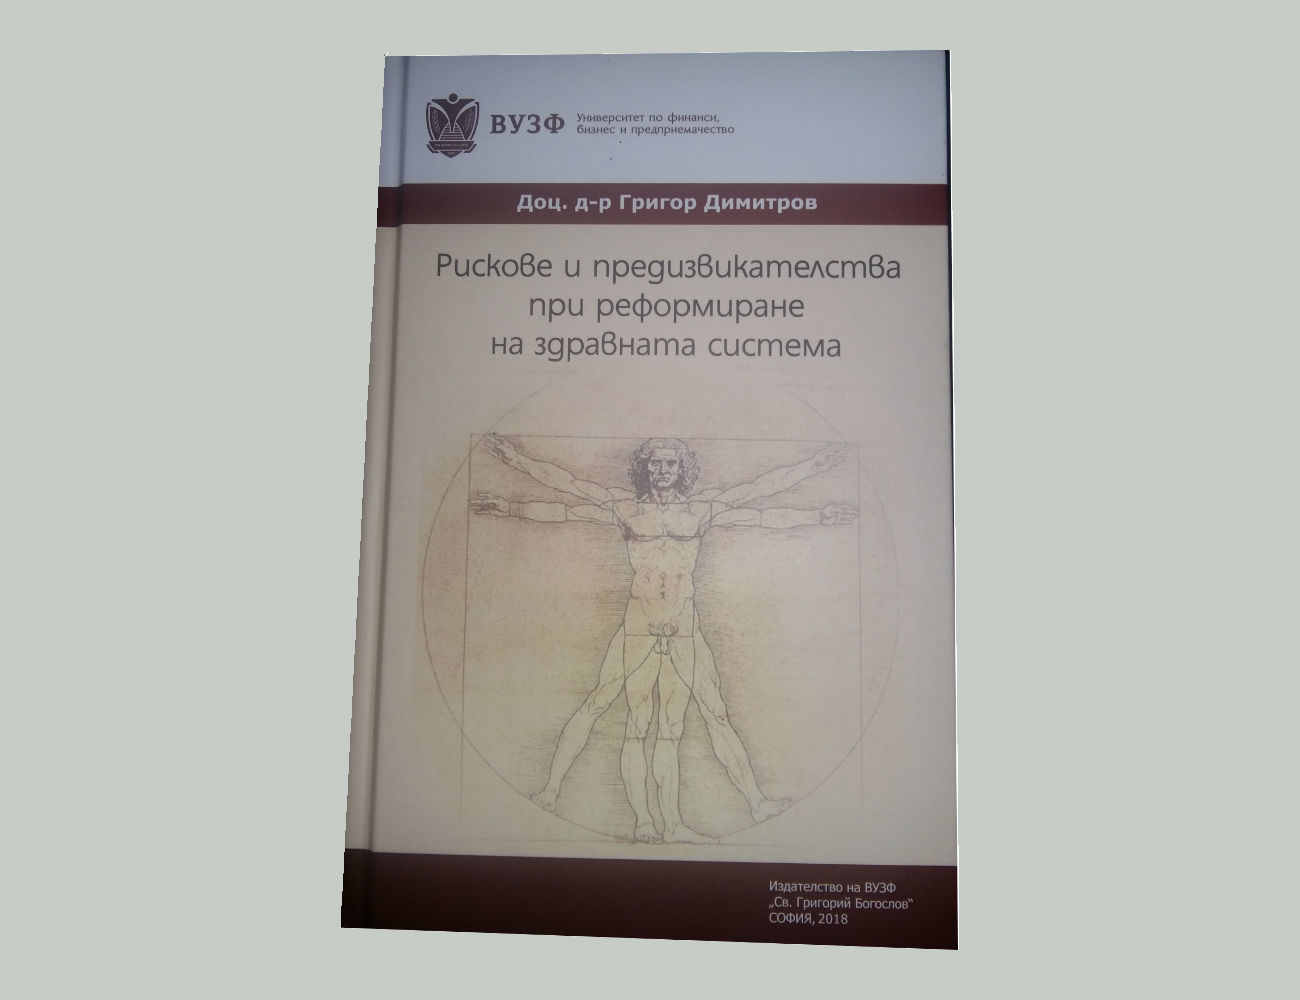 “Рискове и предизвикателства при реформиране на здравната система“ е най-новата книга на доц. д-р Григор Димитров